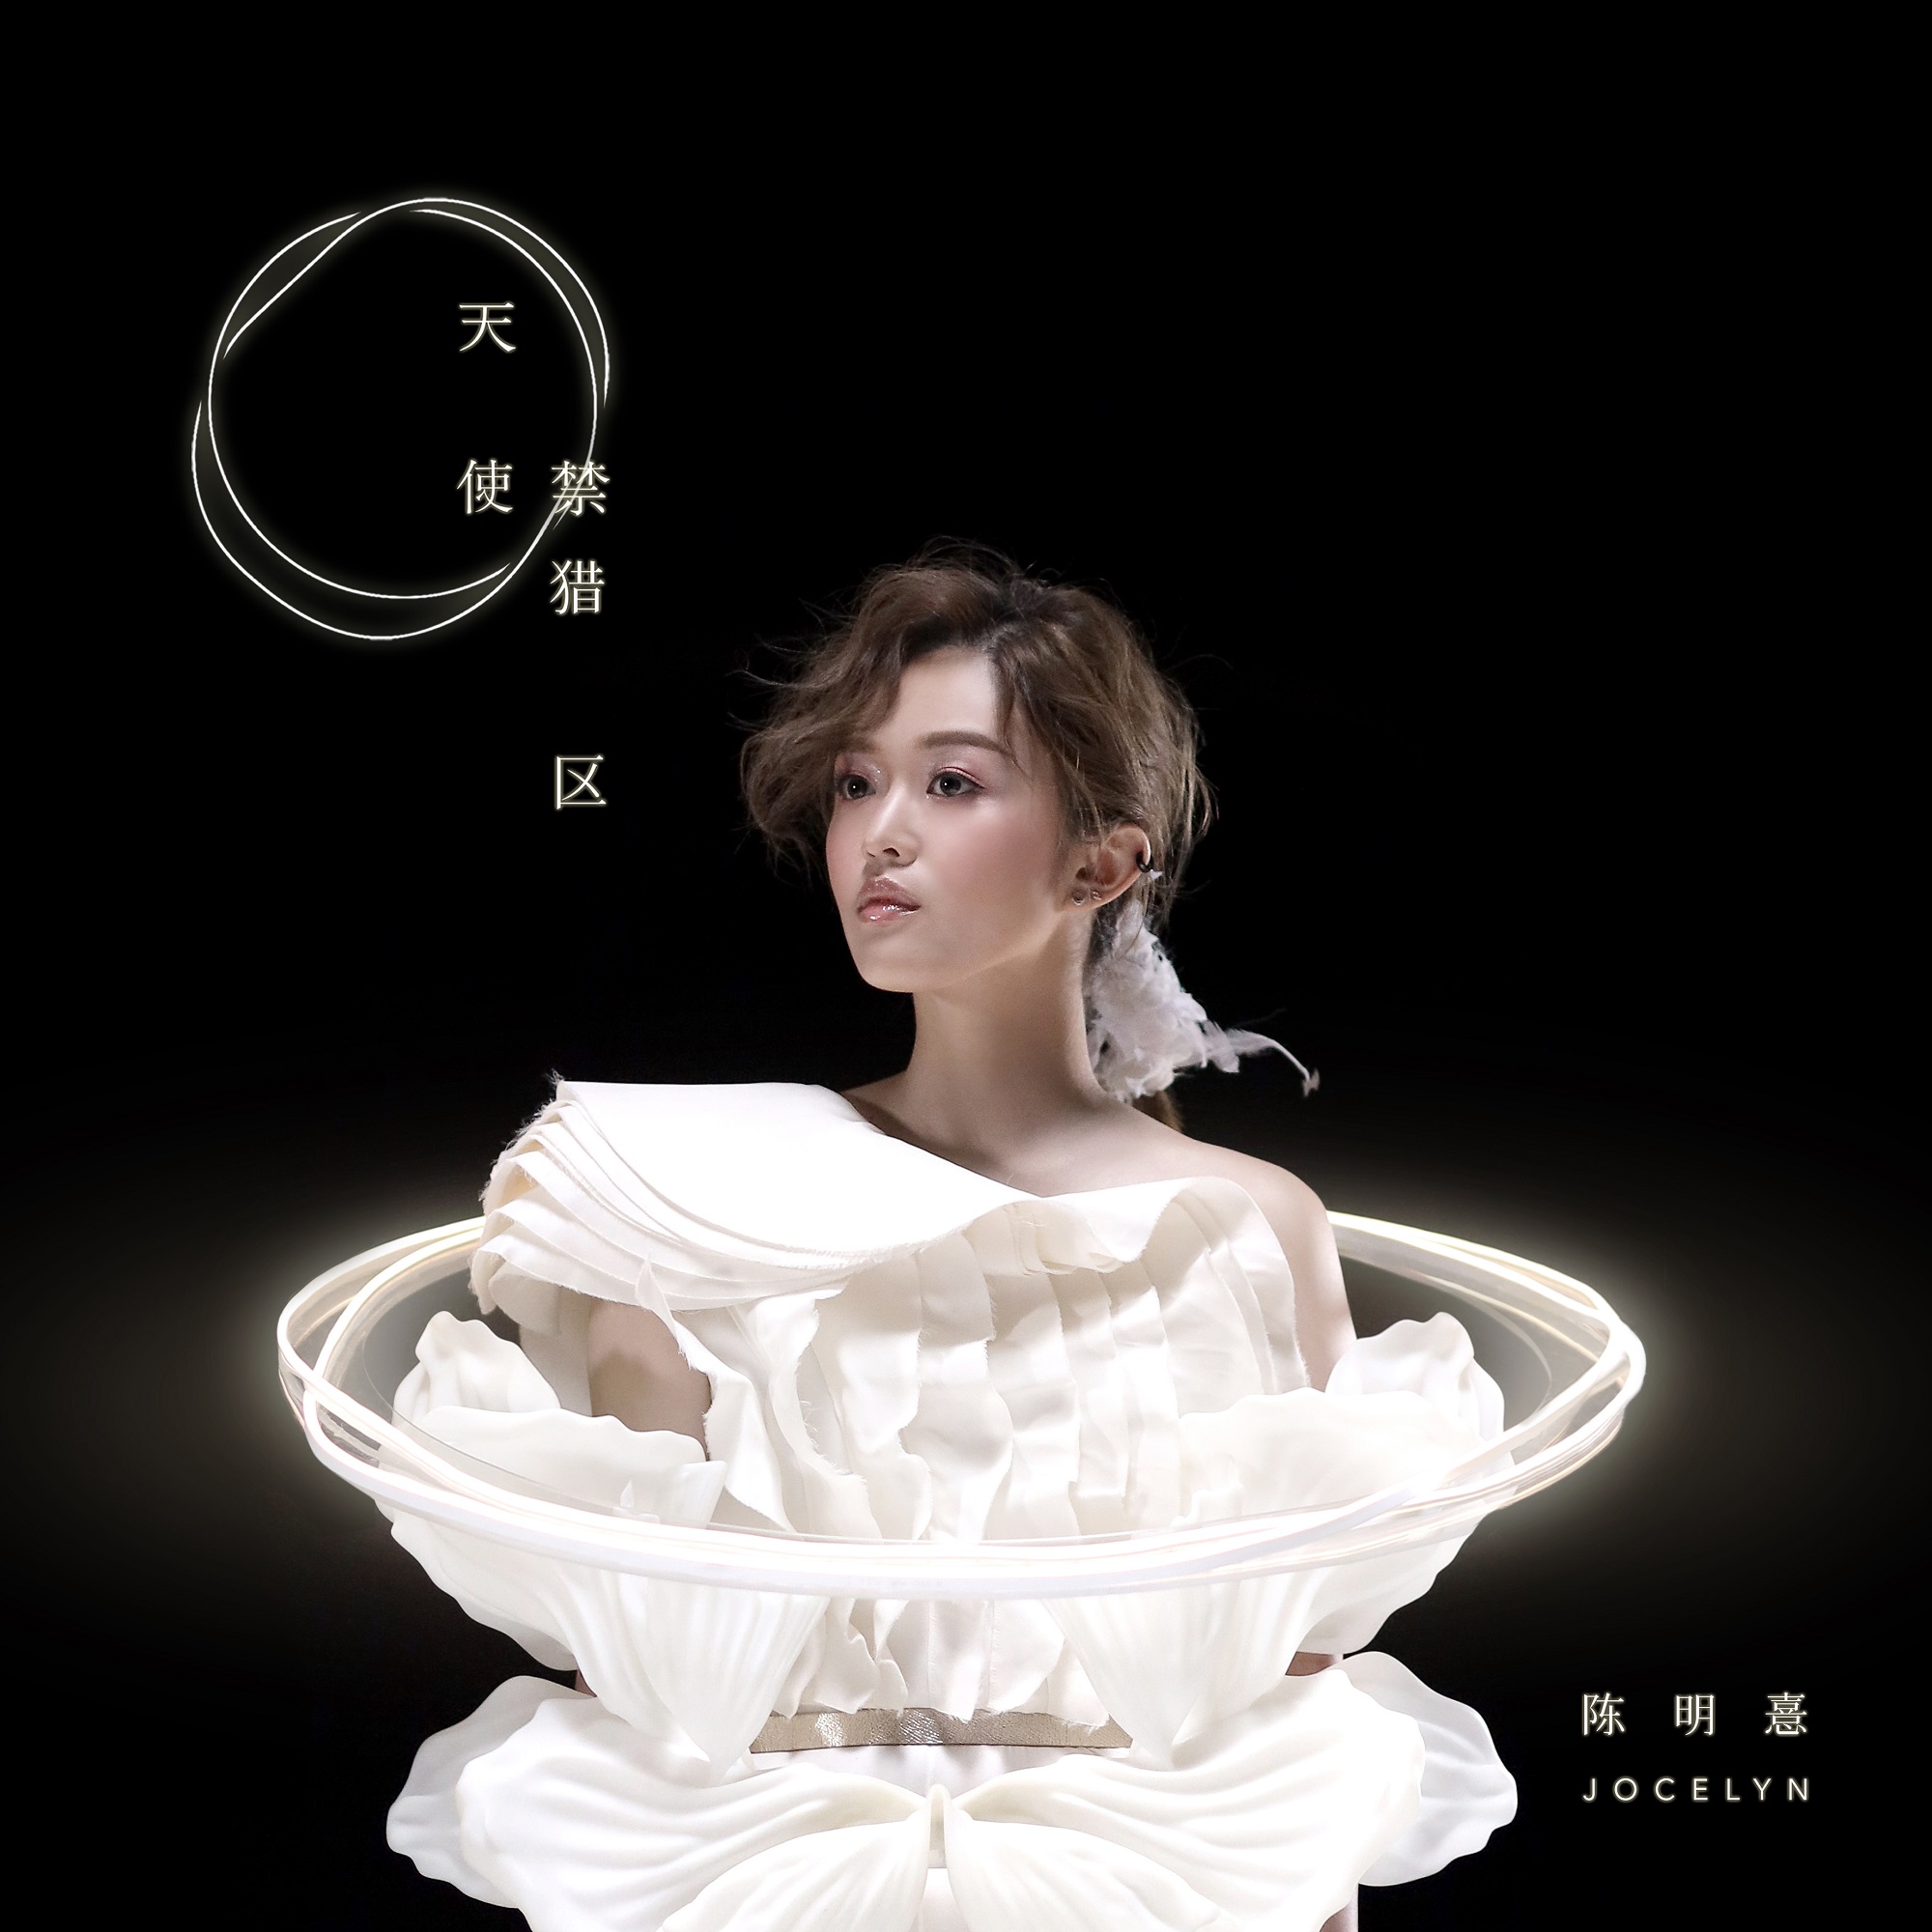 陳明憙Jocelyn《天使禁獵區》今日上線 全新EP12月18日正式發佈